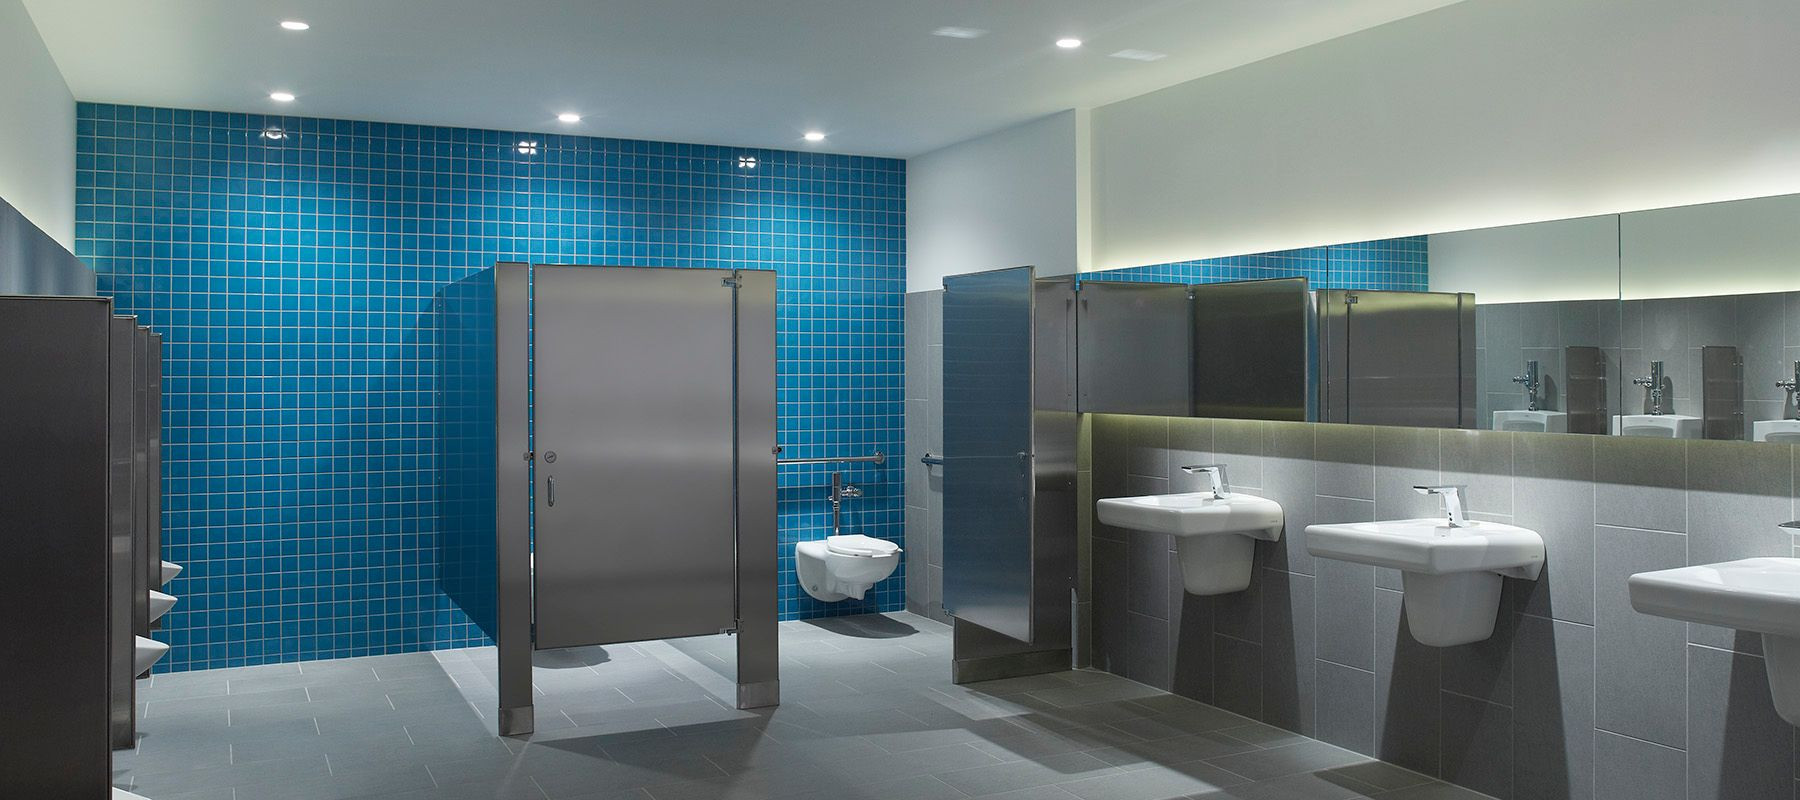 Commercial Bathroom Designs
 mercial Bathroom Bathroom